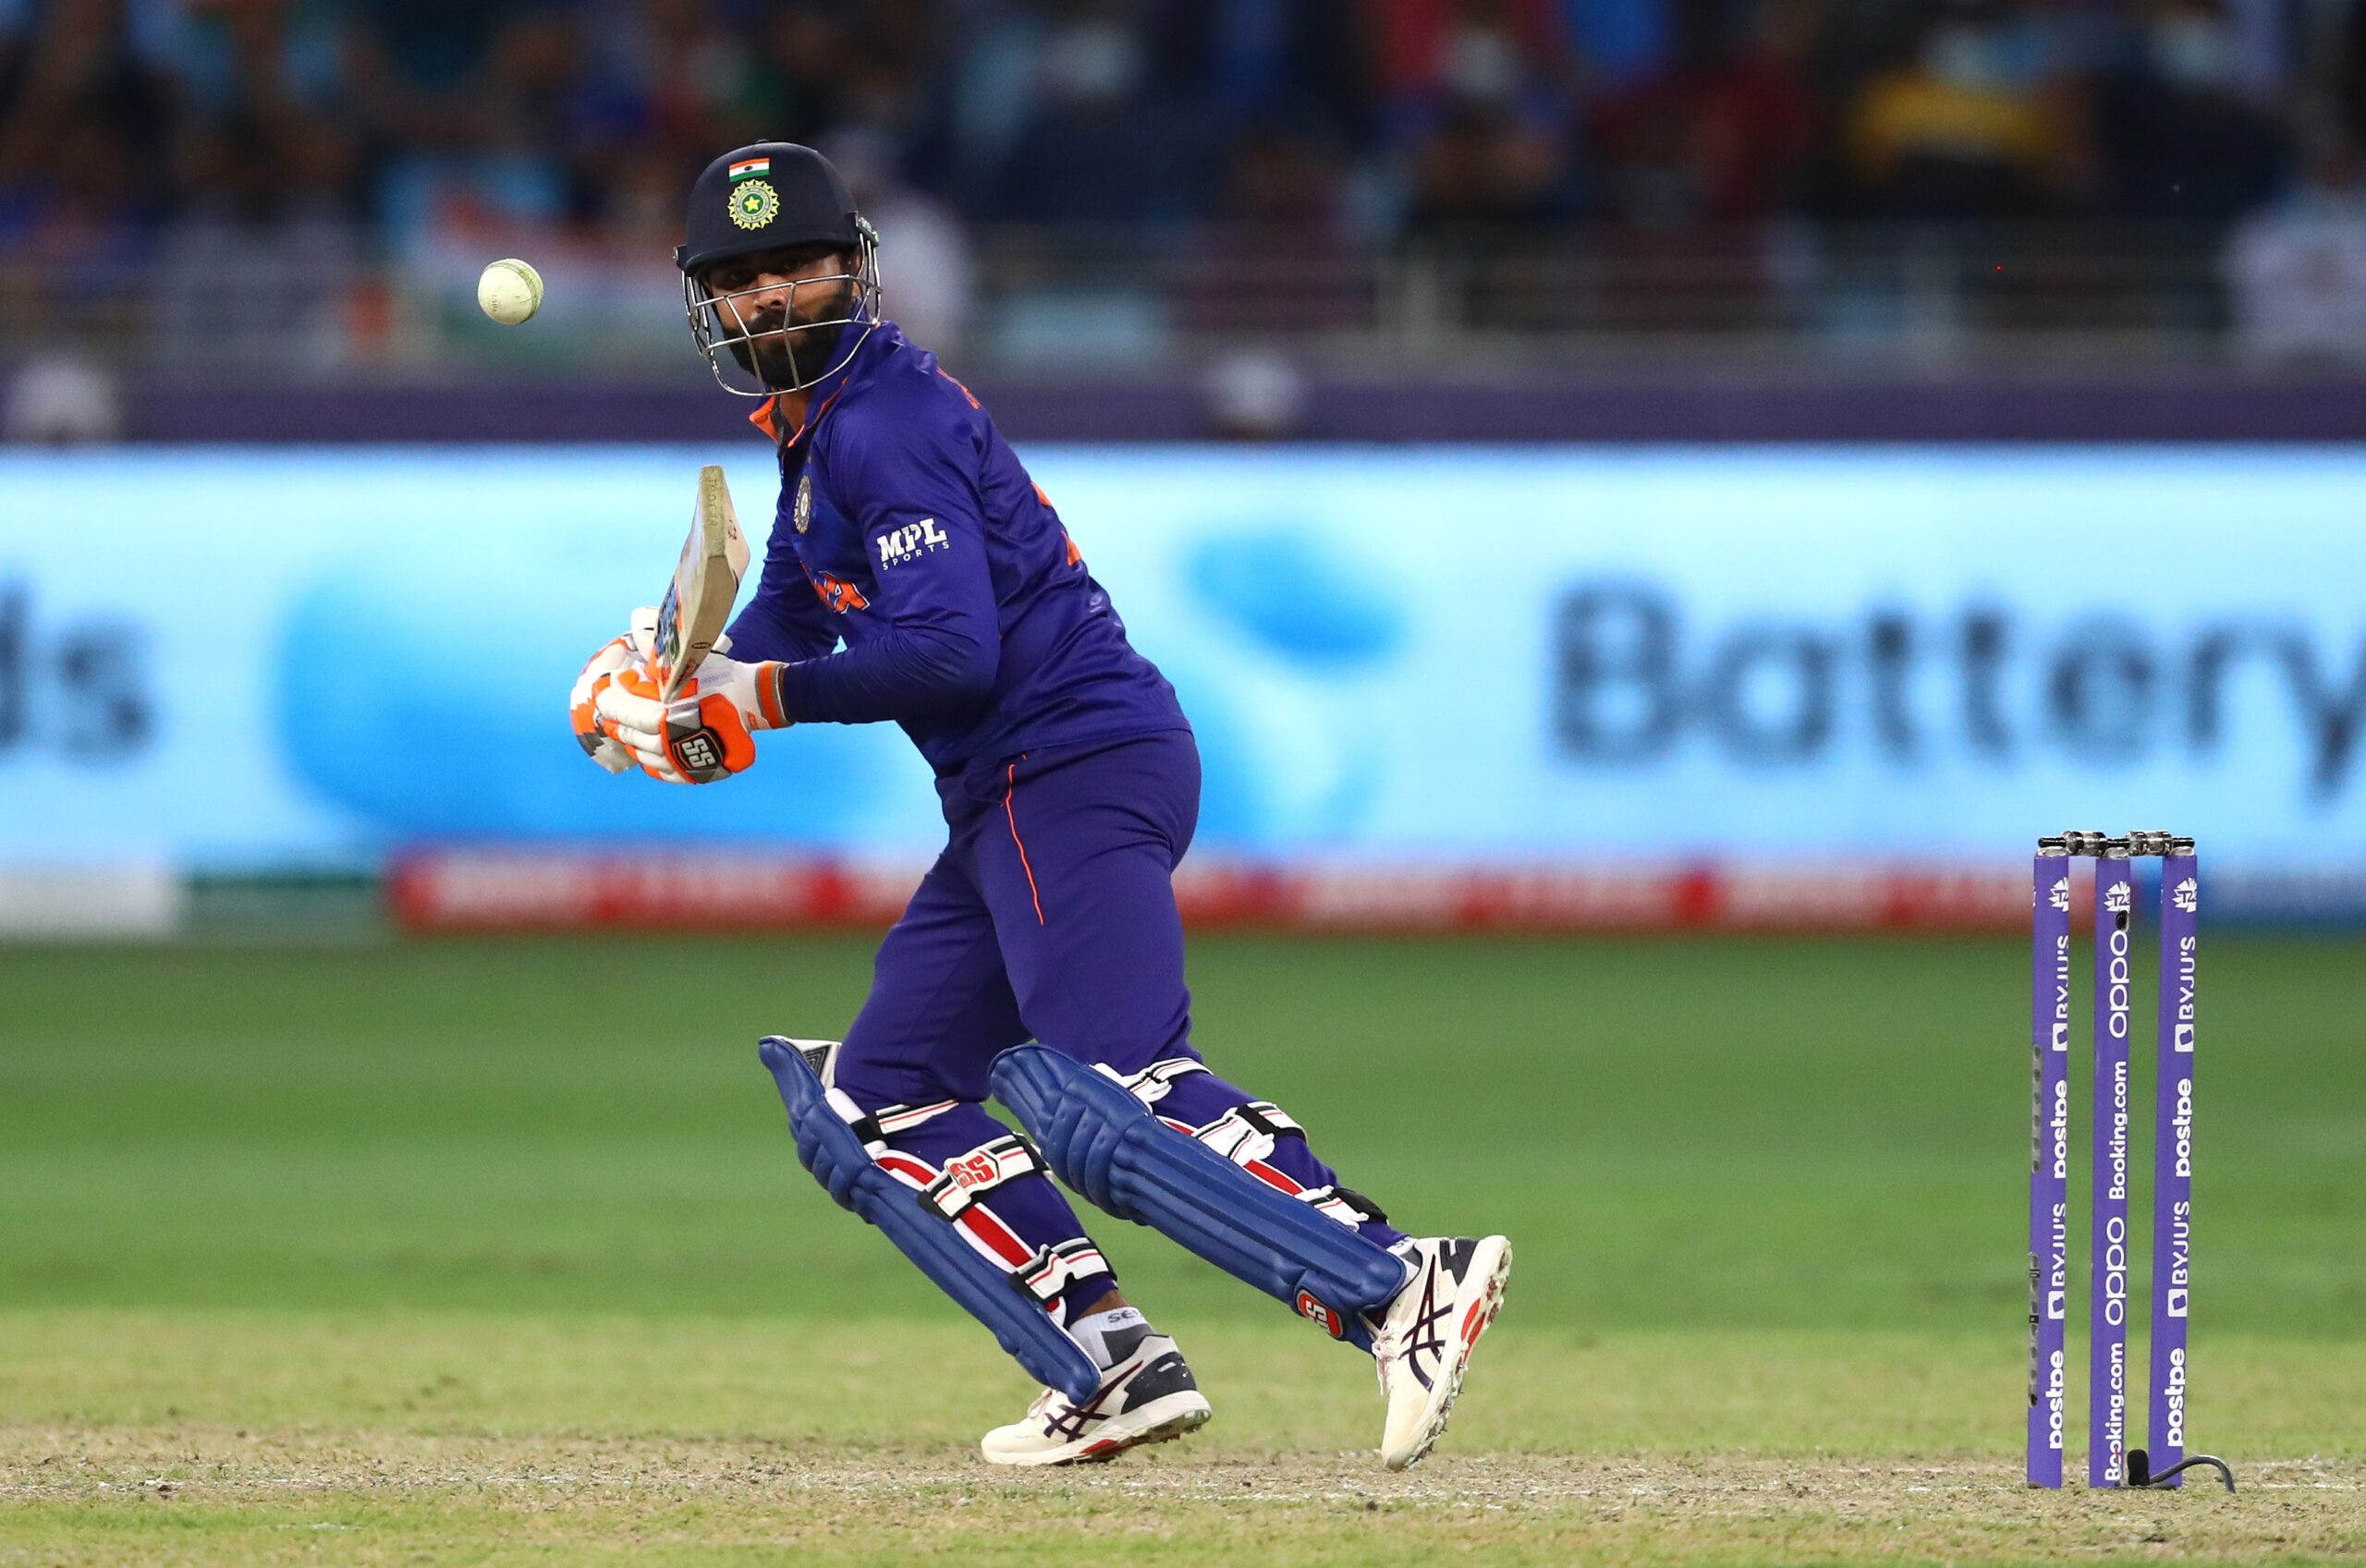 ICC T20 World Cup 2021: न्यूजीलैंड के खिलाफ भारत की शर्मनाक हार, सेमीफाइनल की रेस से लगभग बाहर हुई टीम 5